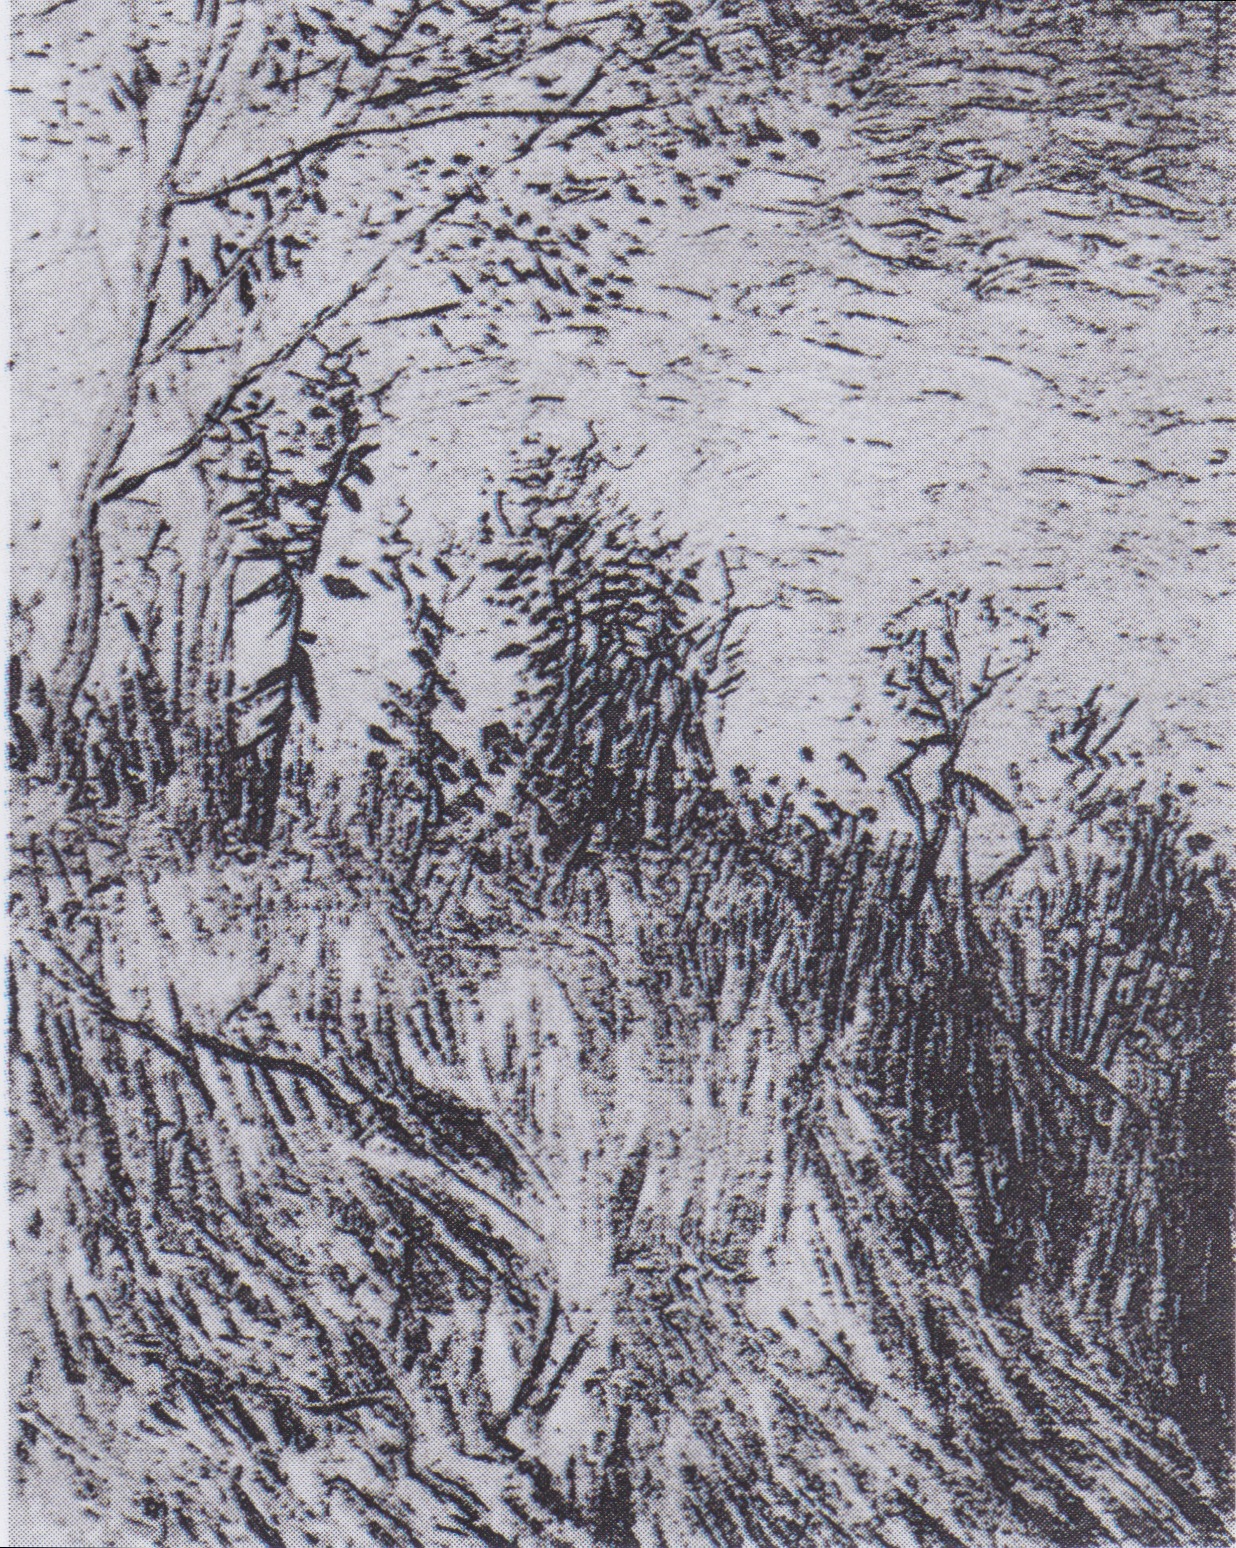 Vincent+Van+Gogh-1853-1890 (8).jpeg